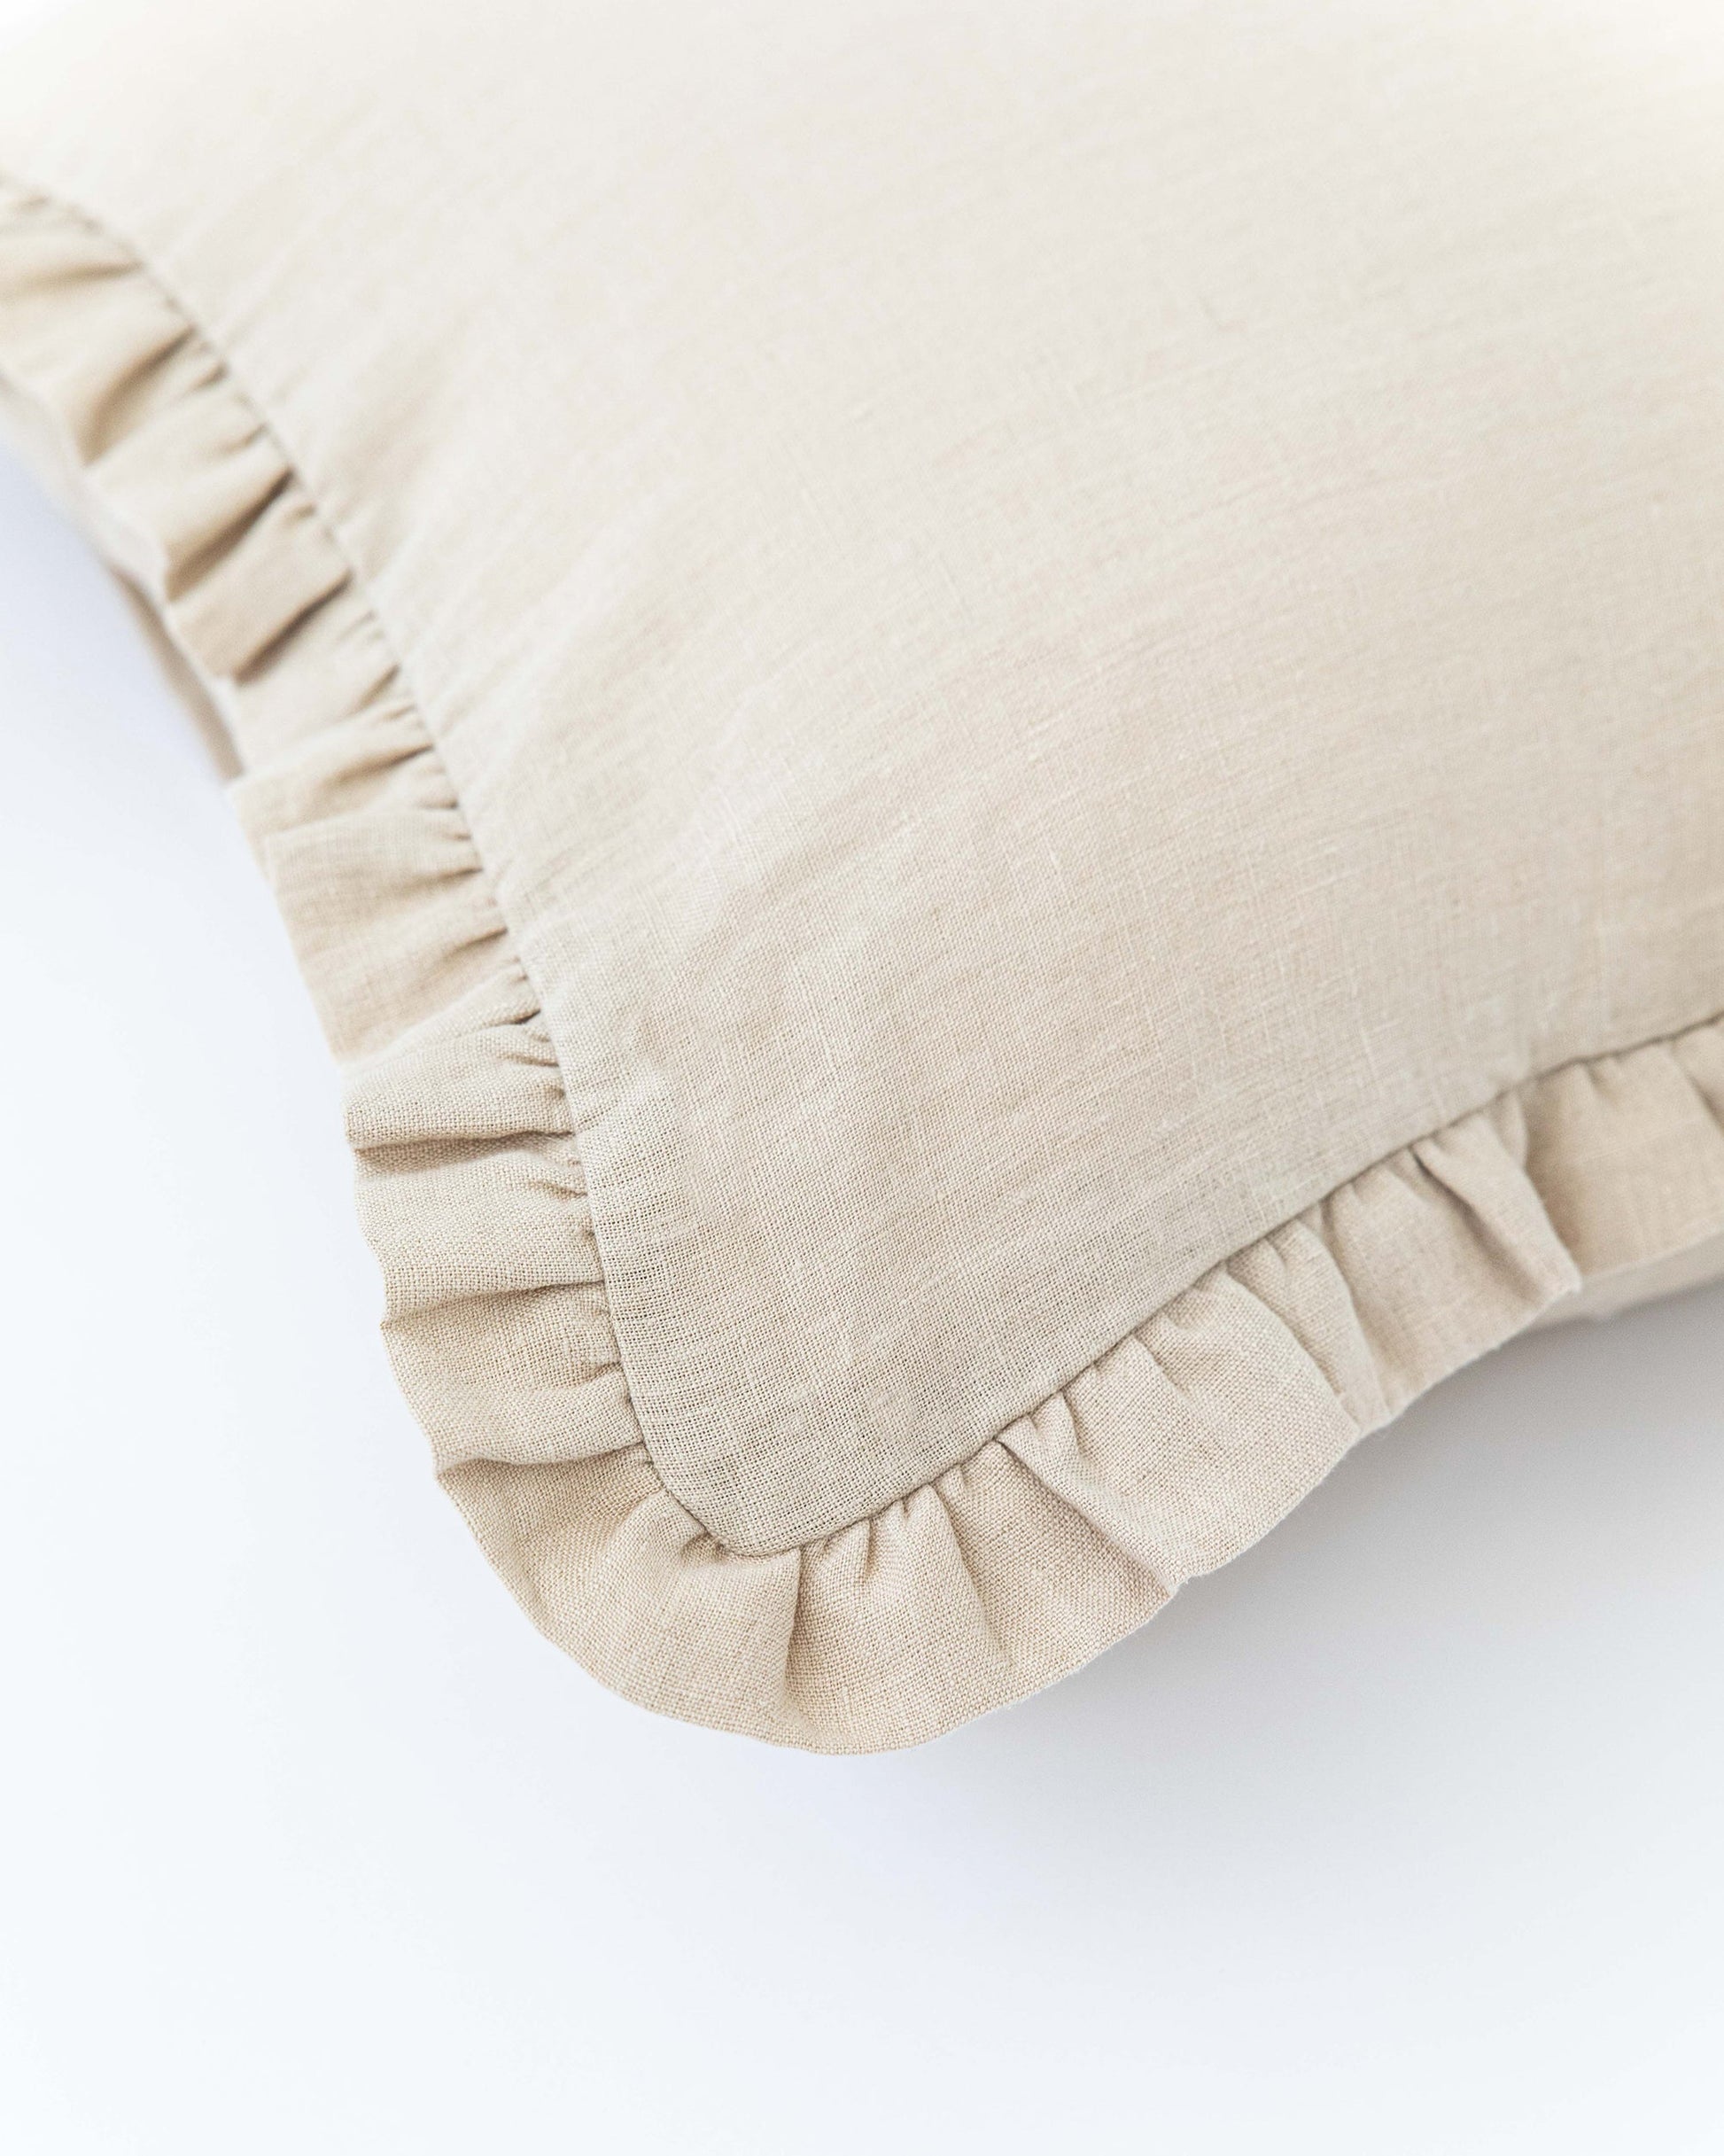 Custom size ruffle trim linen pillowcase in Natural linen - MagicLinen